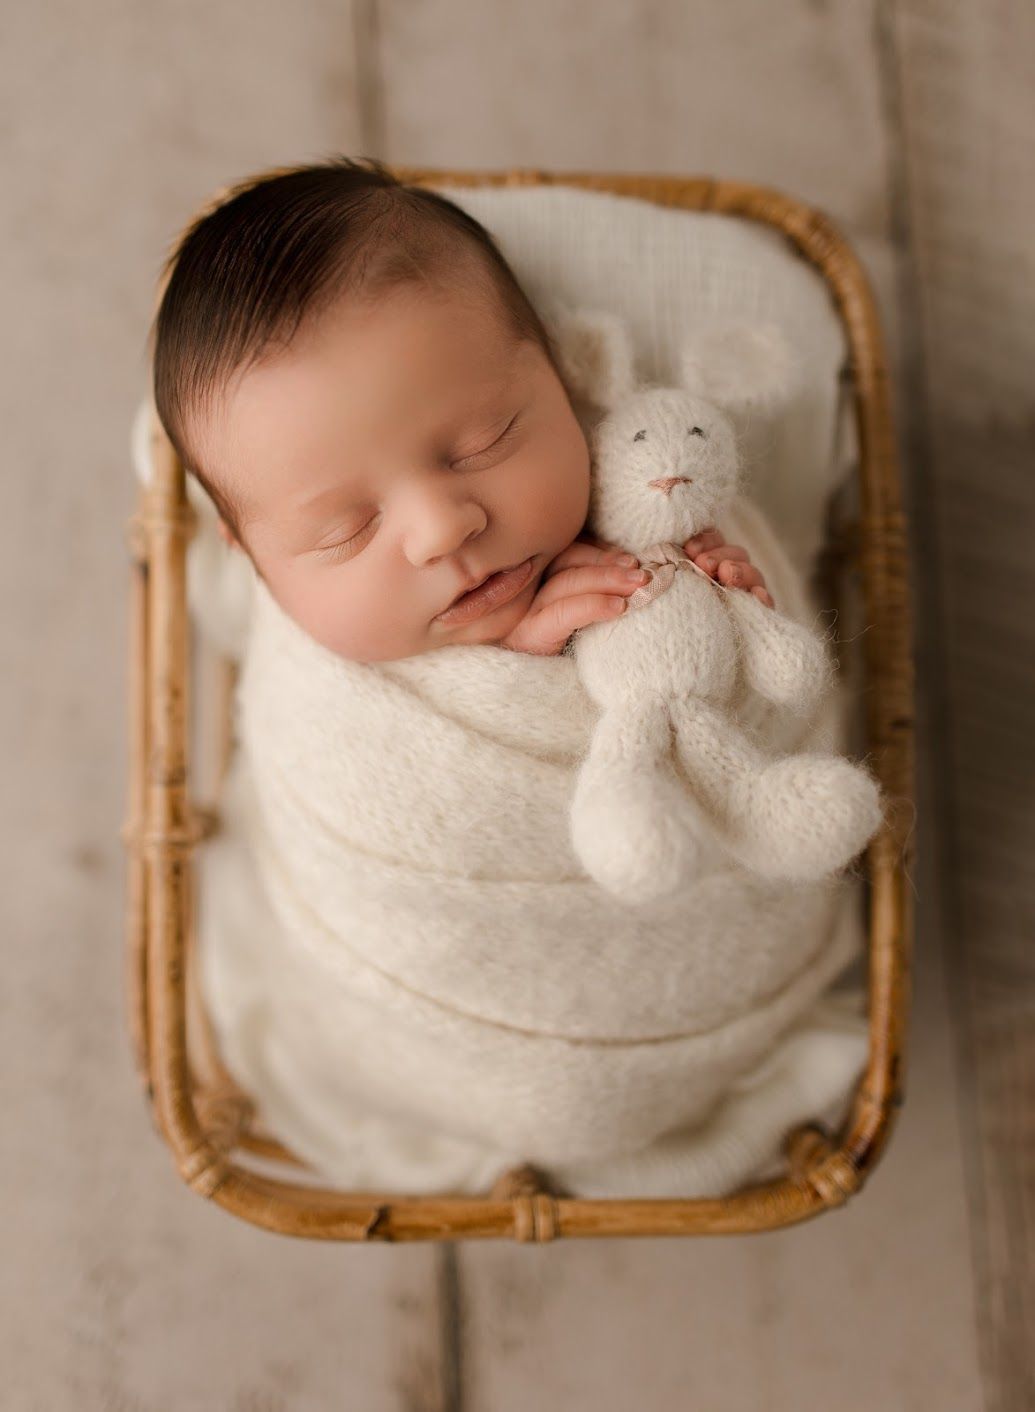 A newborn baby is sleeping in a wicker basket holding a stuffed bunny.